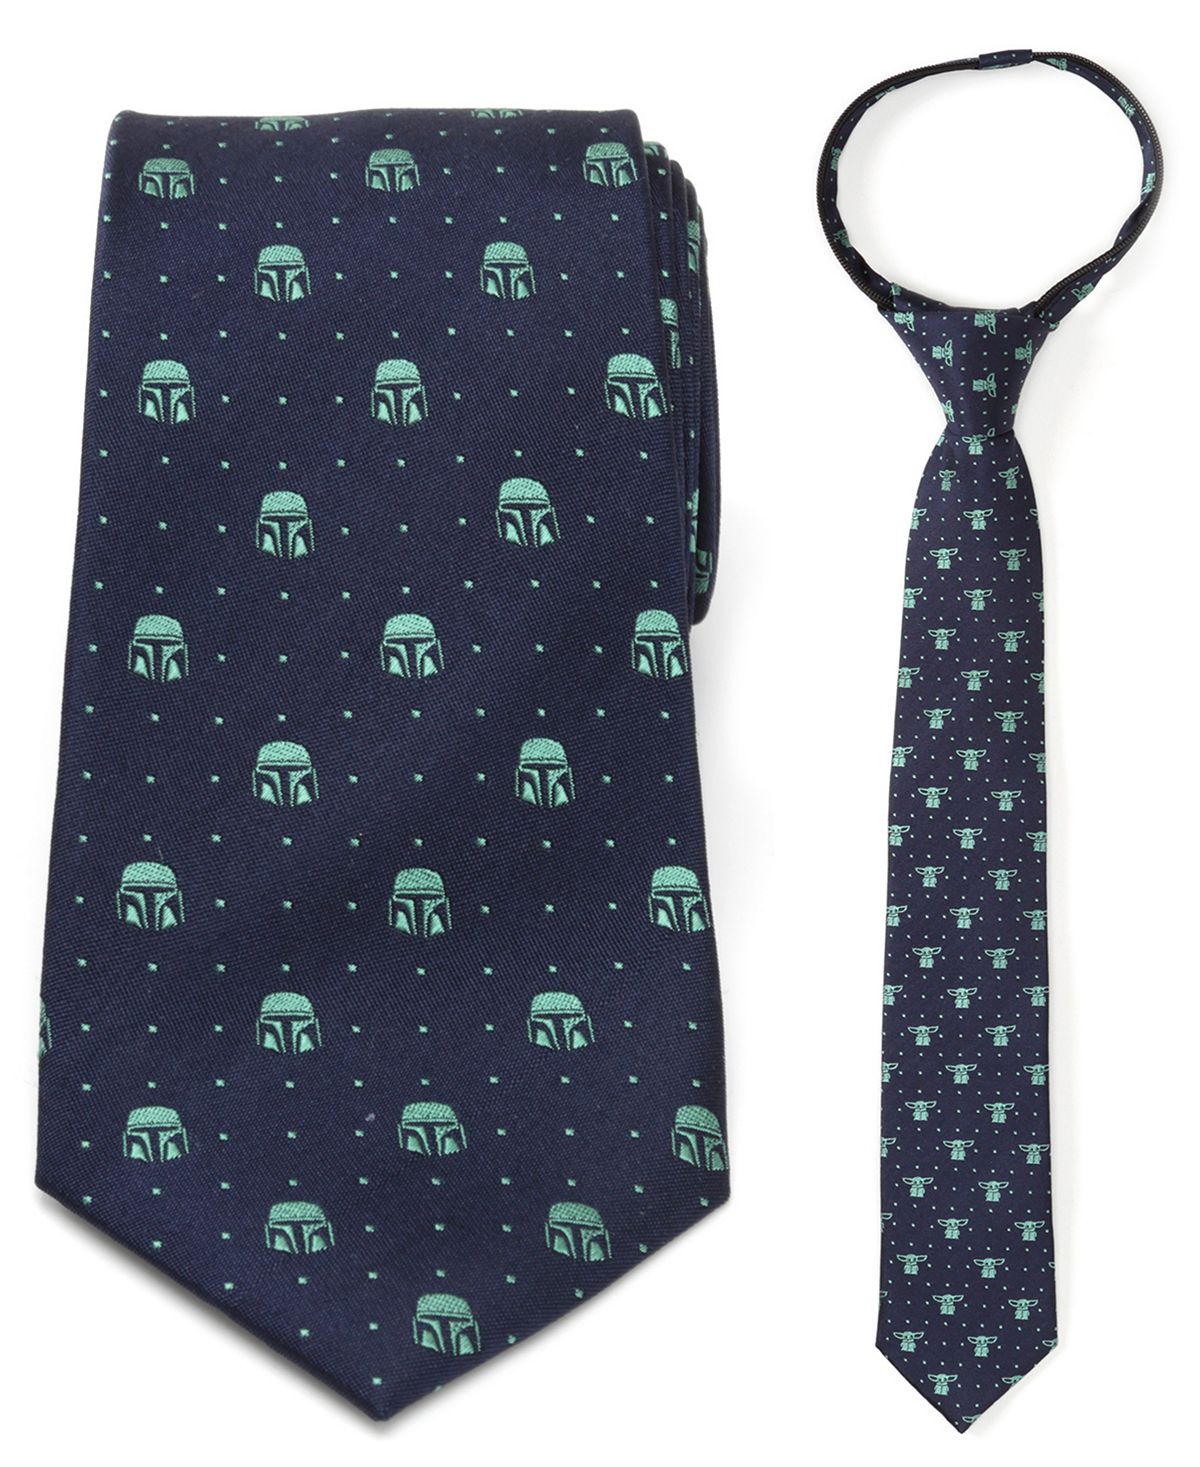 цена Подарочный набор галстуков на молнии «Отец и сын» Mondo and The Child Star Wars